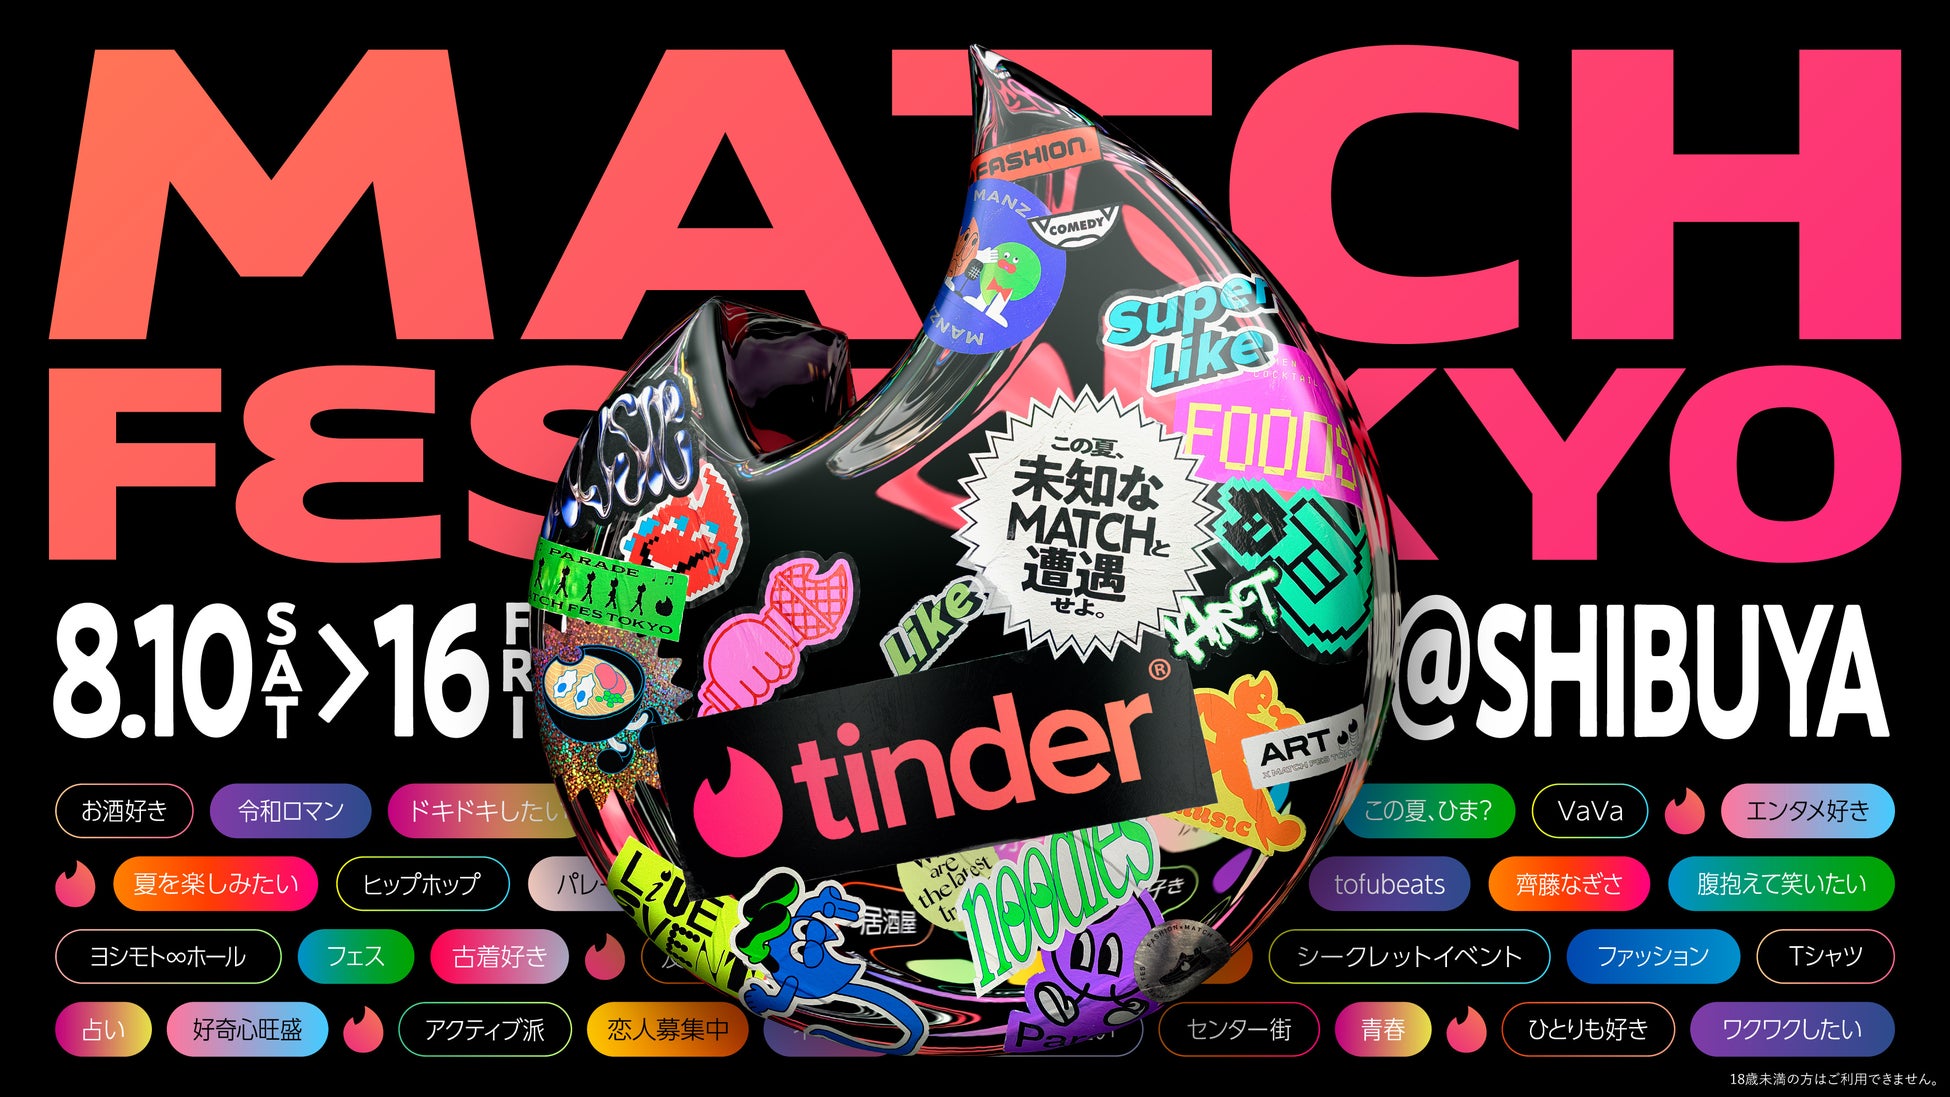 この夏は「未知なMatch」と遭遇しよう！Tinderがパスになるフェス!?「MATCH FES TOKYO」渋谷で初開催